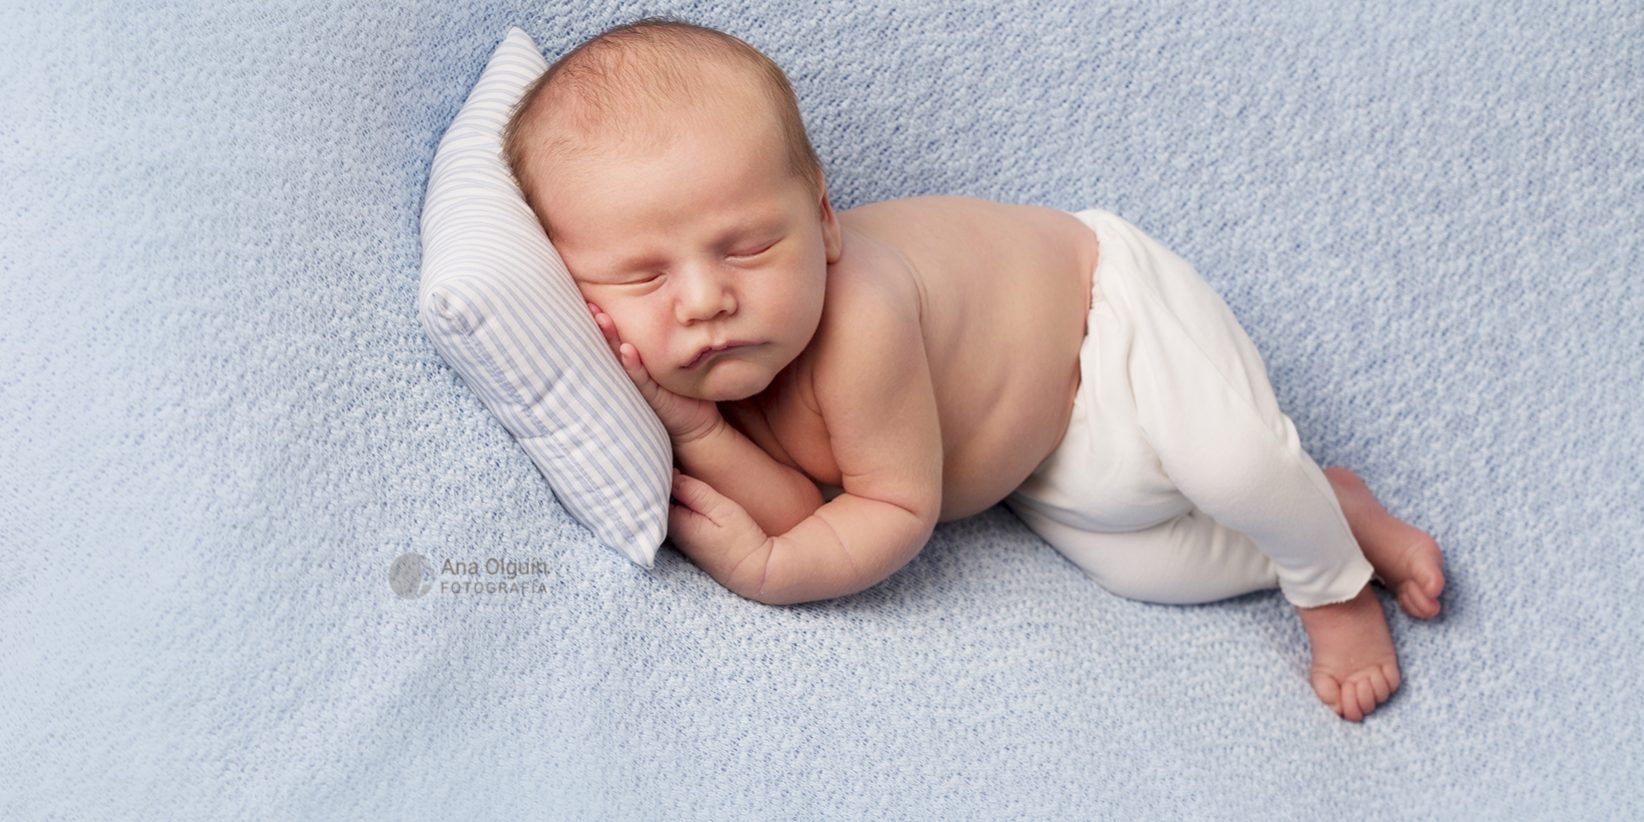 Cuándo hacer la sesión fotográfica de recién nacido? – Ana Olguin Fotografía